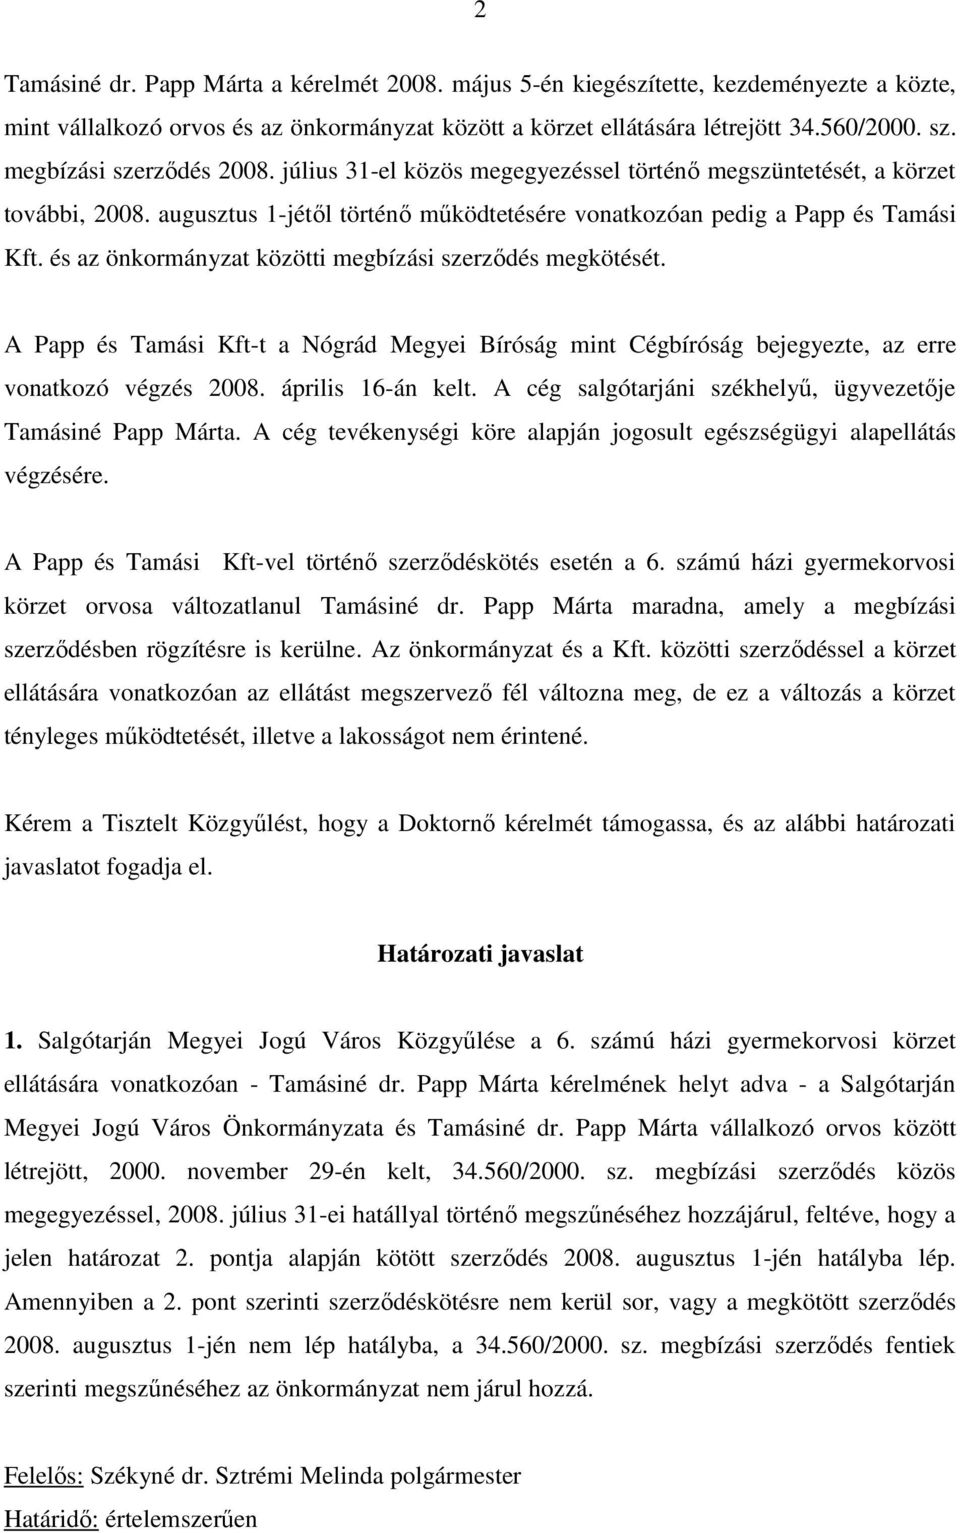 és az önkormányzat közötti megbízási szerzıdés megkötését. A Papp és Tamási Kft-t a Nógrád Megyei Bíróság mint Cégbíróság bejegyezte, az erre vonatkozó végzés 2008. április 16-án kelt.